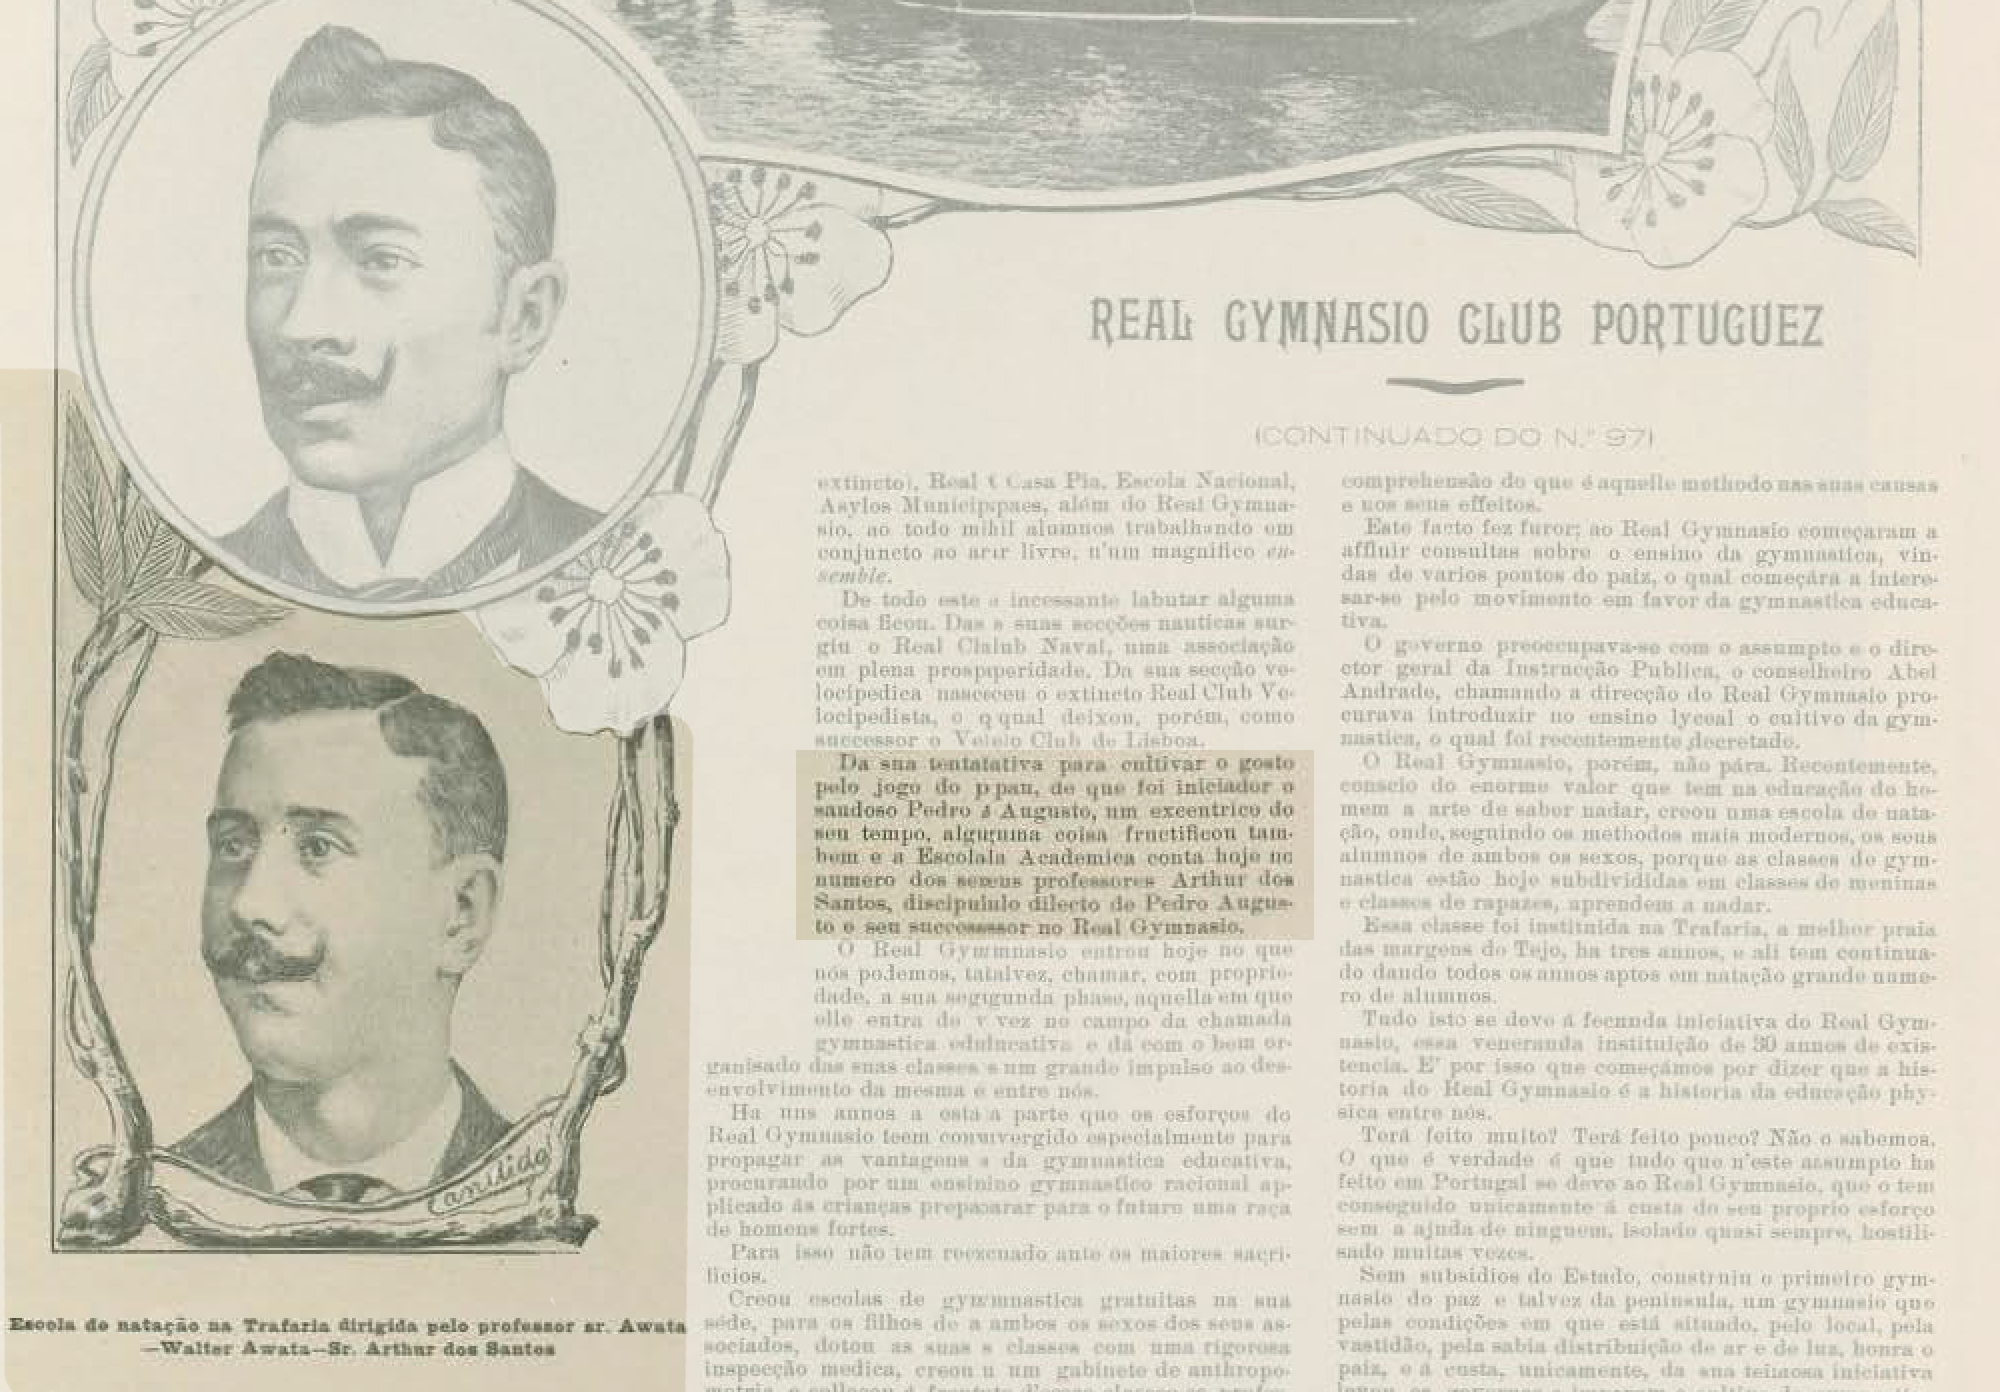 Recorte jornal Illustração Portugueza 1905.png